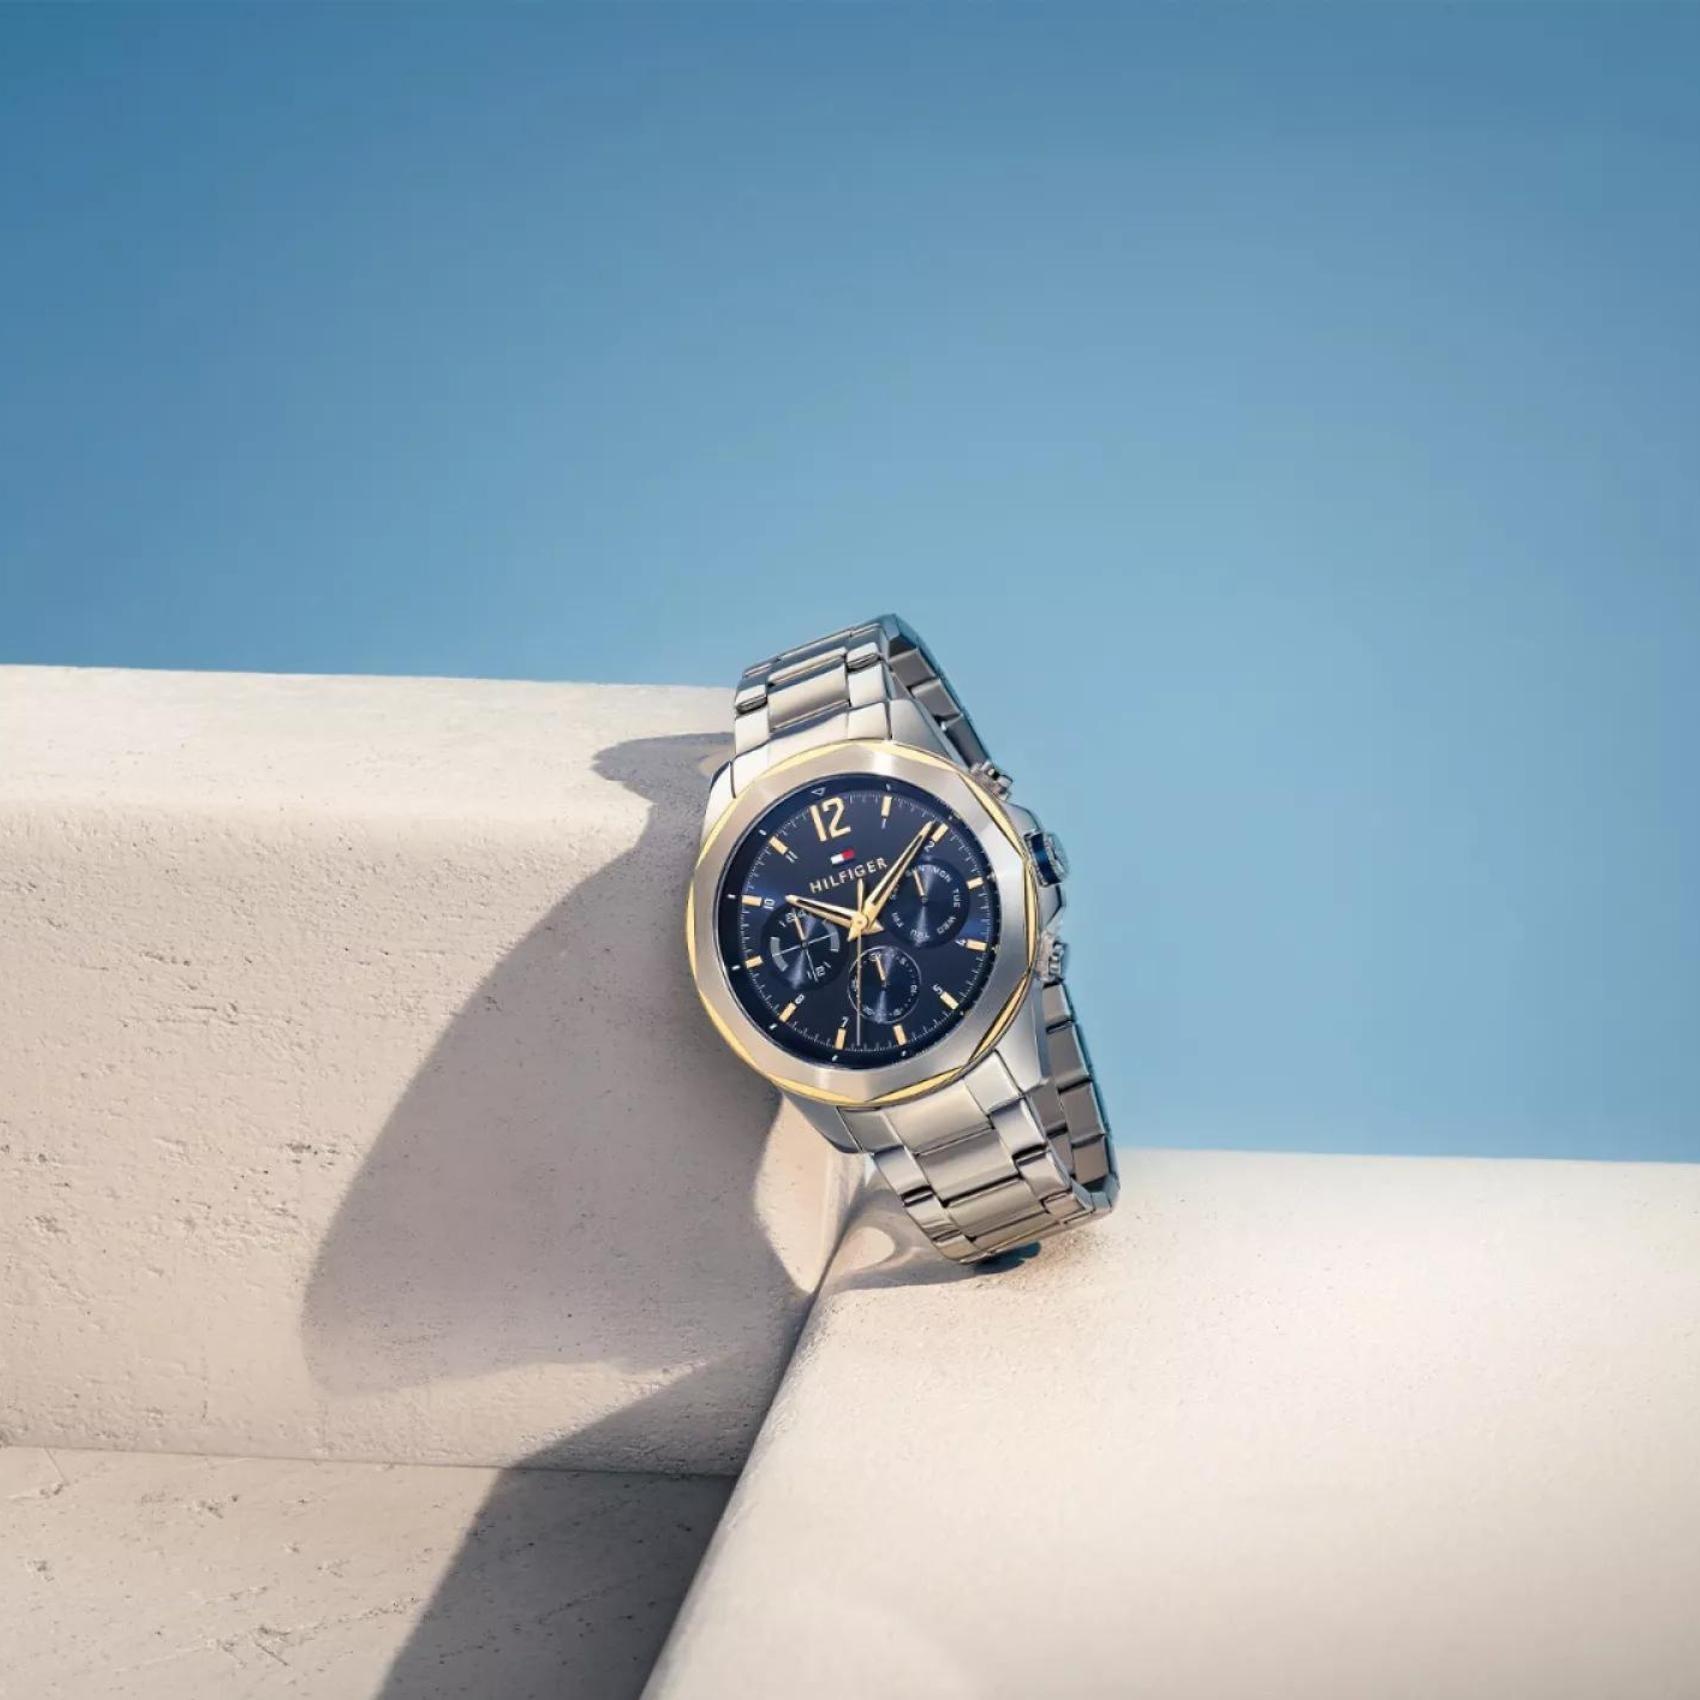 Αντρικό ρολόι Tommy Hilfiger Lars 1792059 με ασημί ατσάλινο μπρασελέ και μπλε καντράν διαμέτρου 46mm με ένδειξη ημερομηνίας-ημέρας.